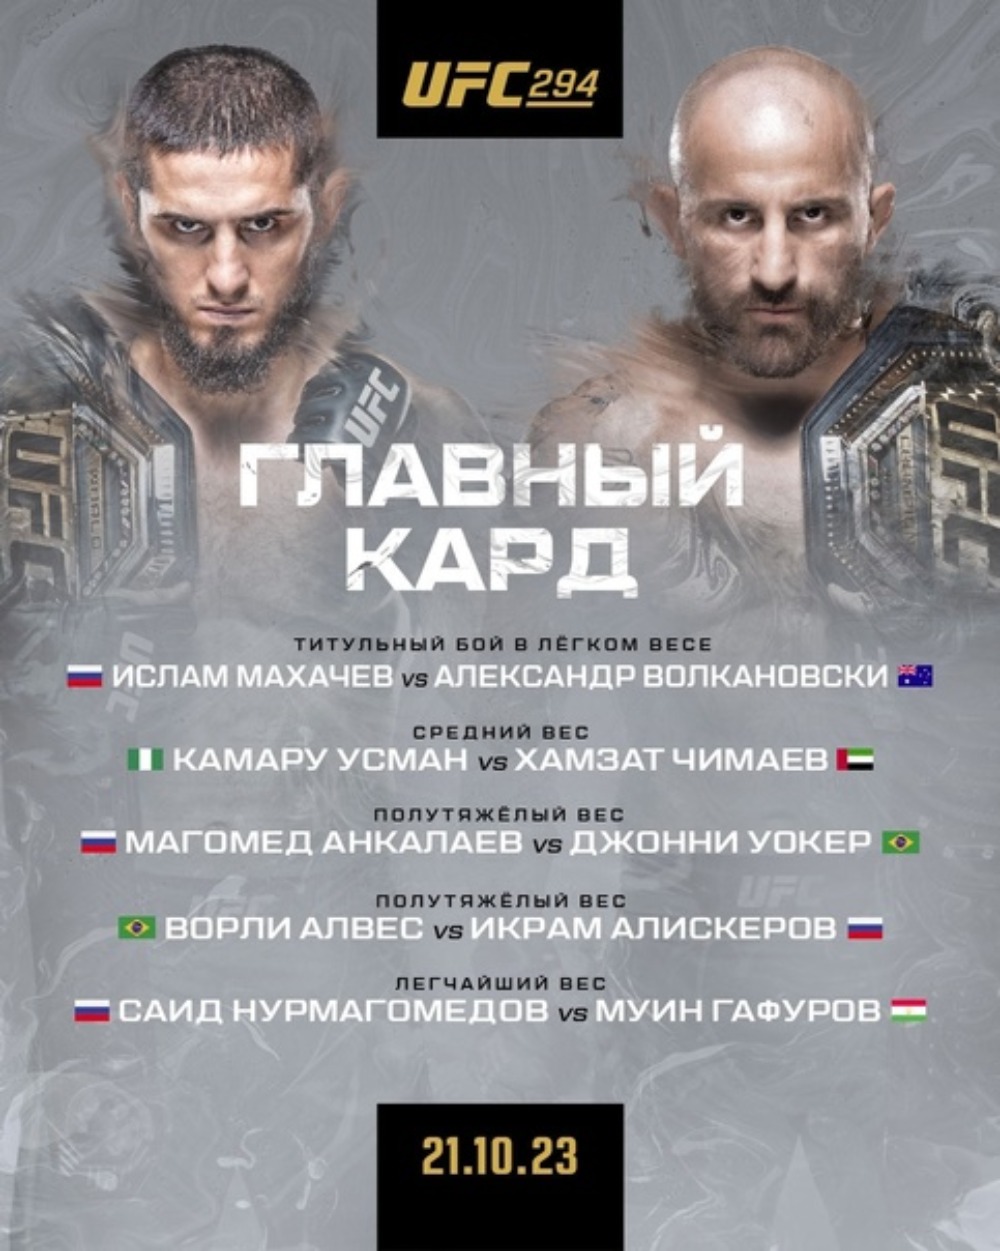 Кард турнира UFC 294 21 октября